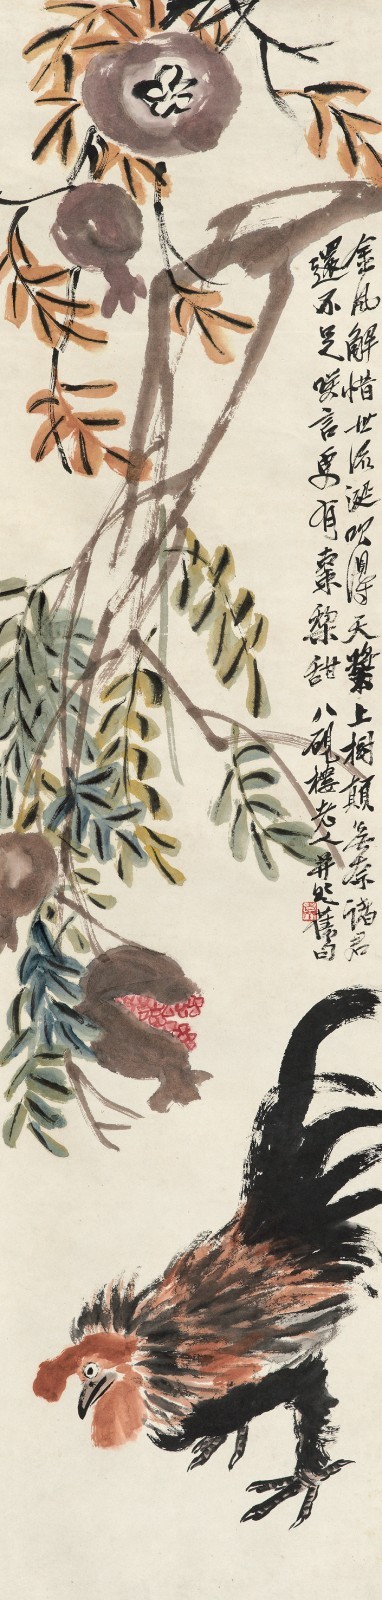 齐白石(1864-1957)石榴大吉设色纸本  立轴